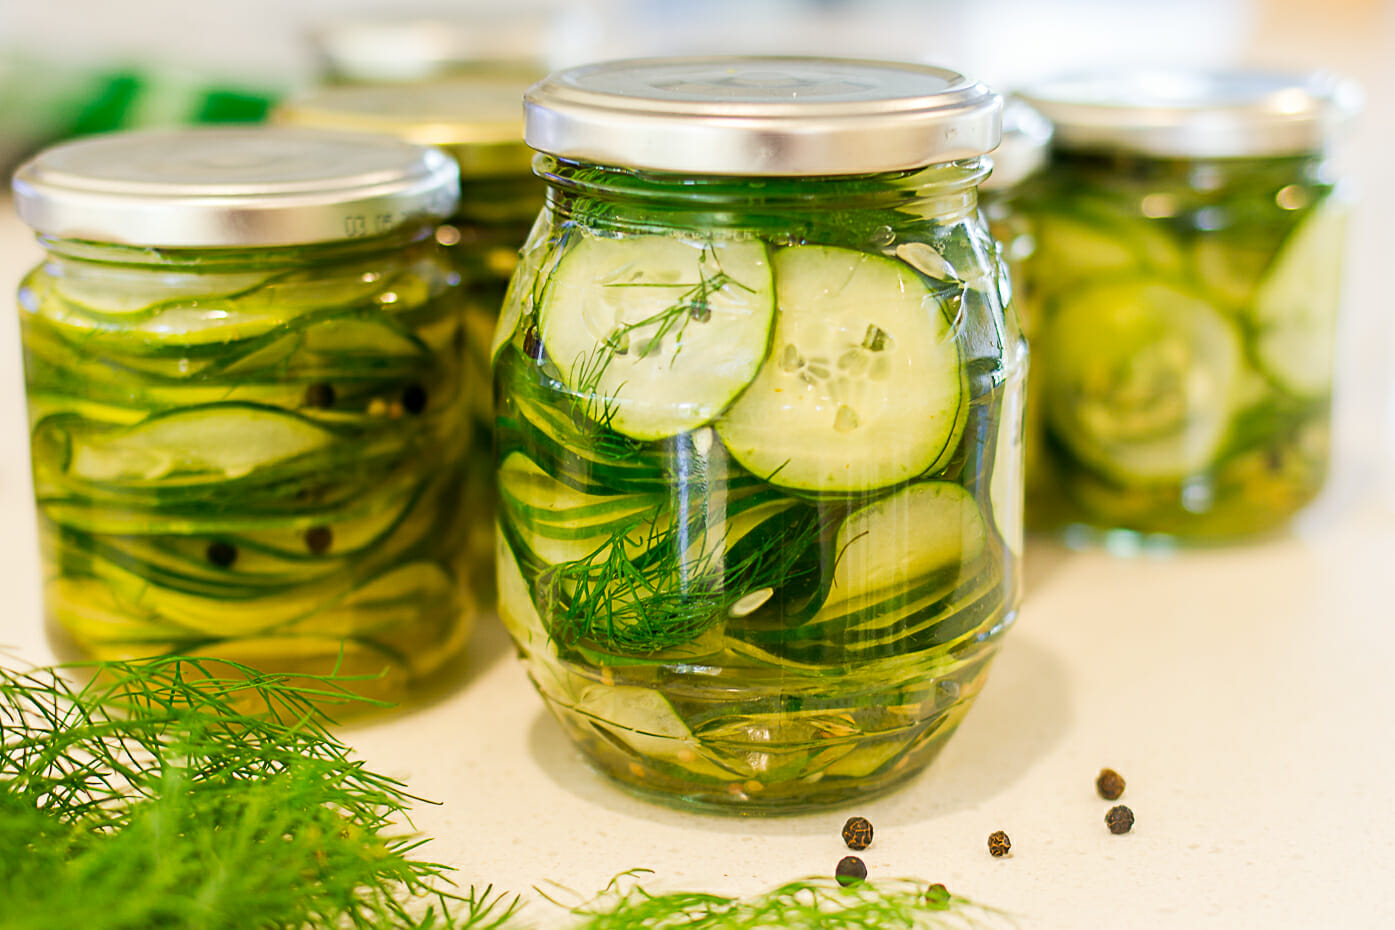 cucumbers in jar